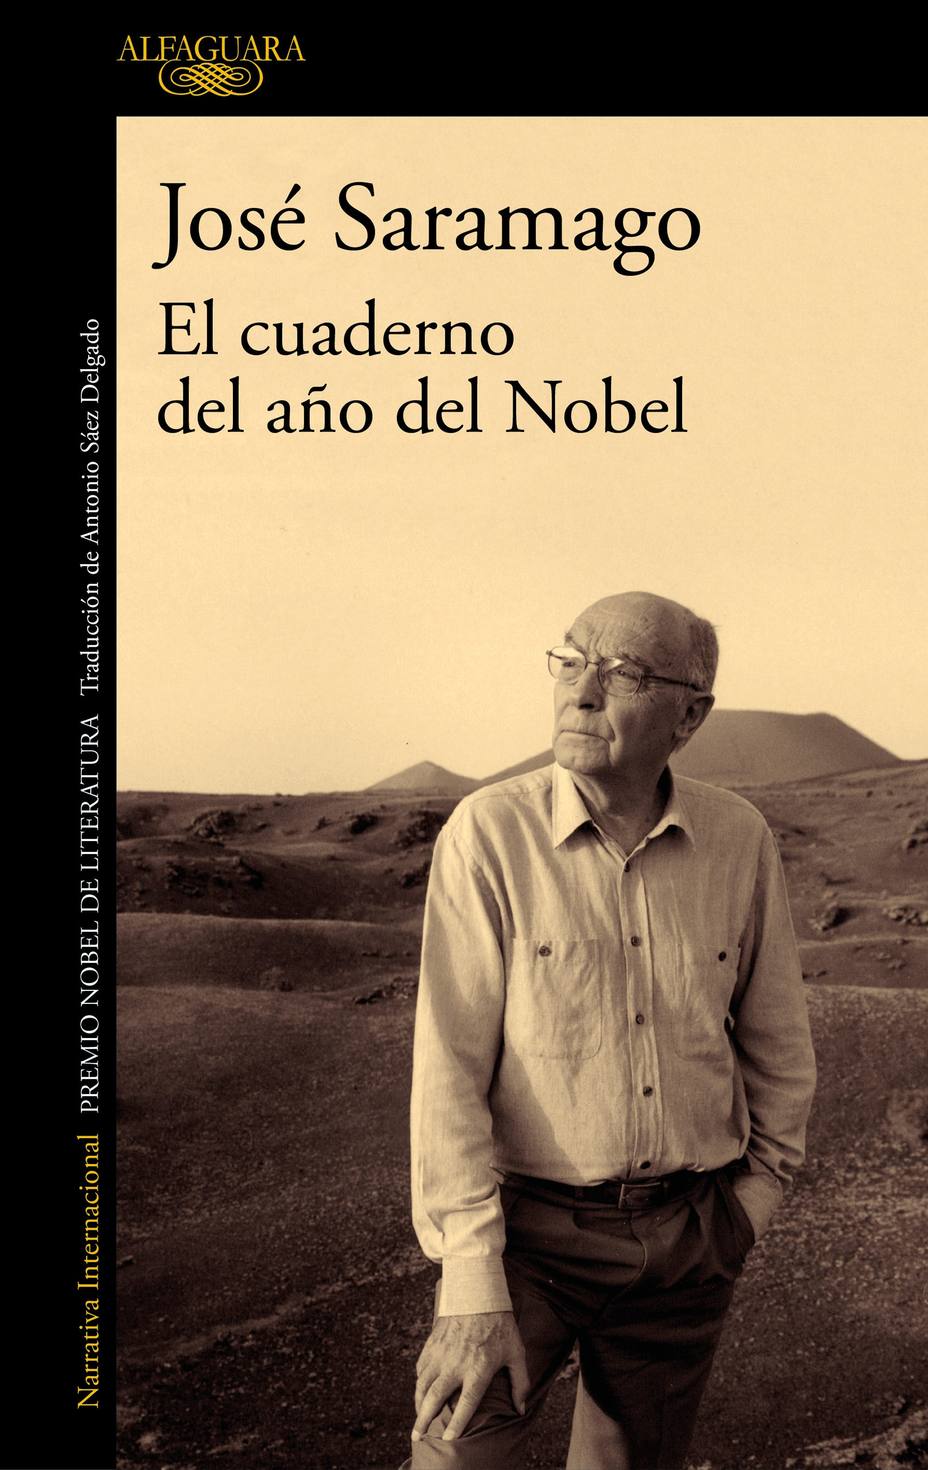 El cuaderno del año del Nobel redescubre a un nuevo Saramago a través de un diario inédito y entrañable